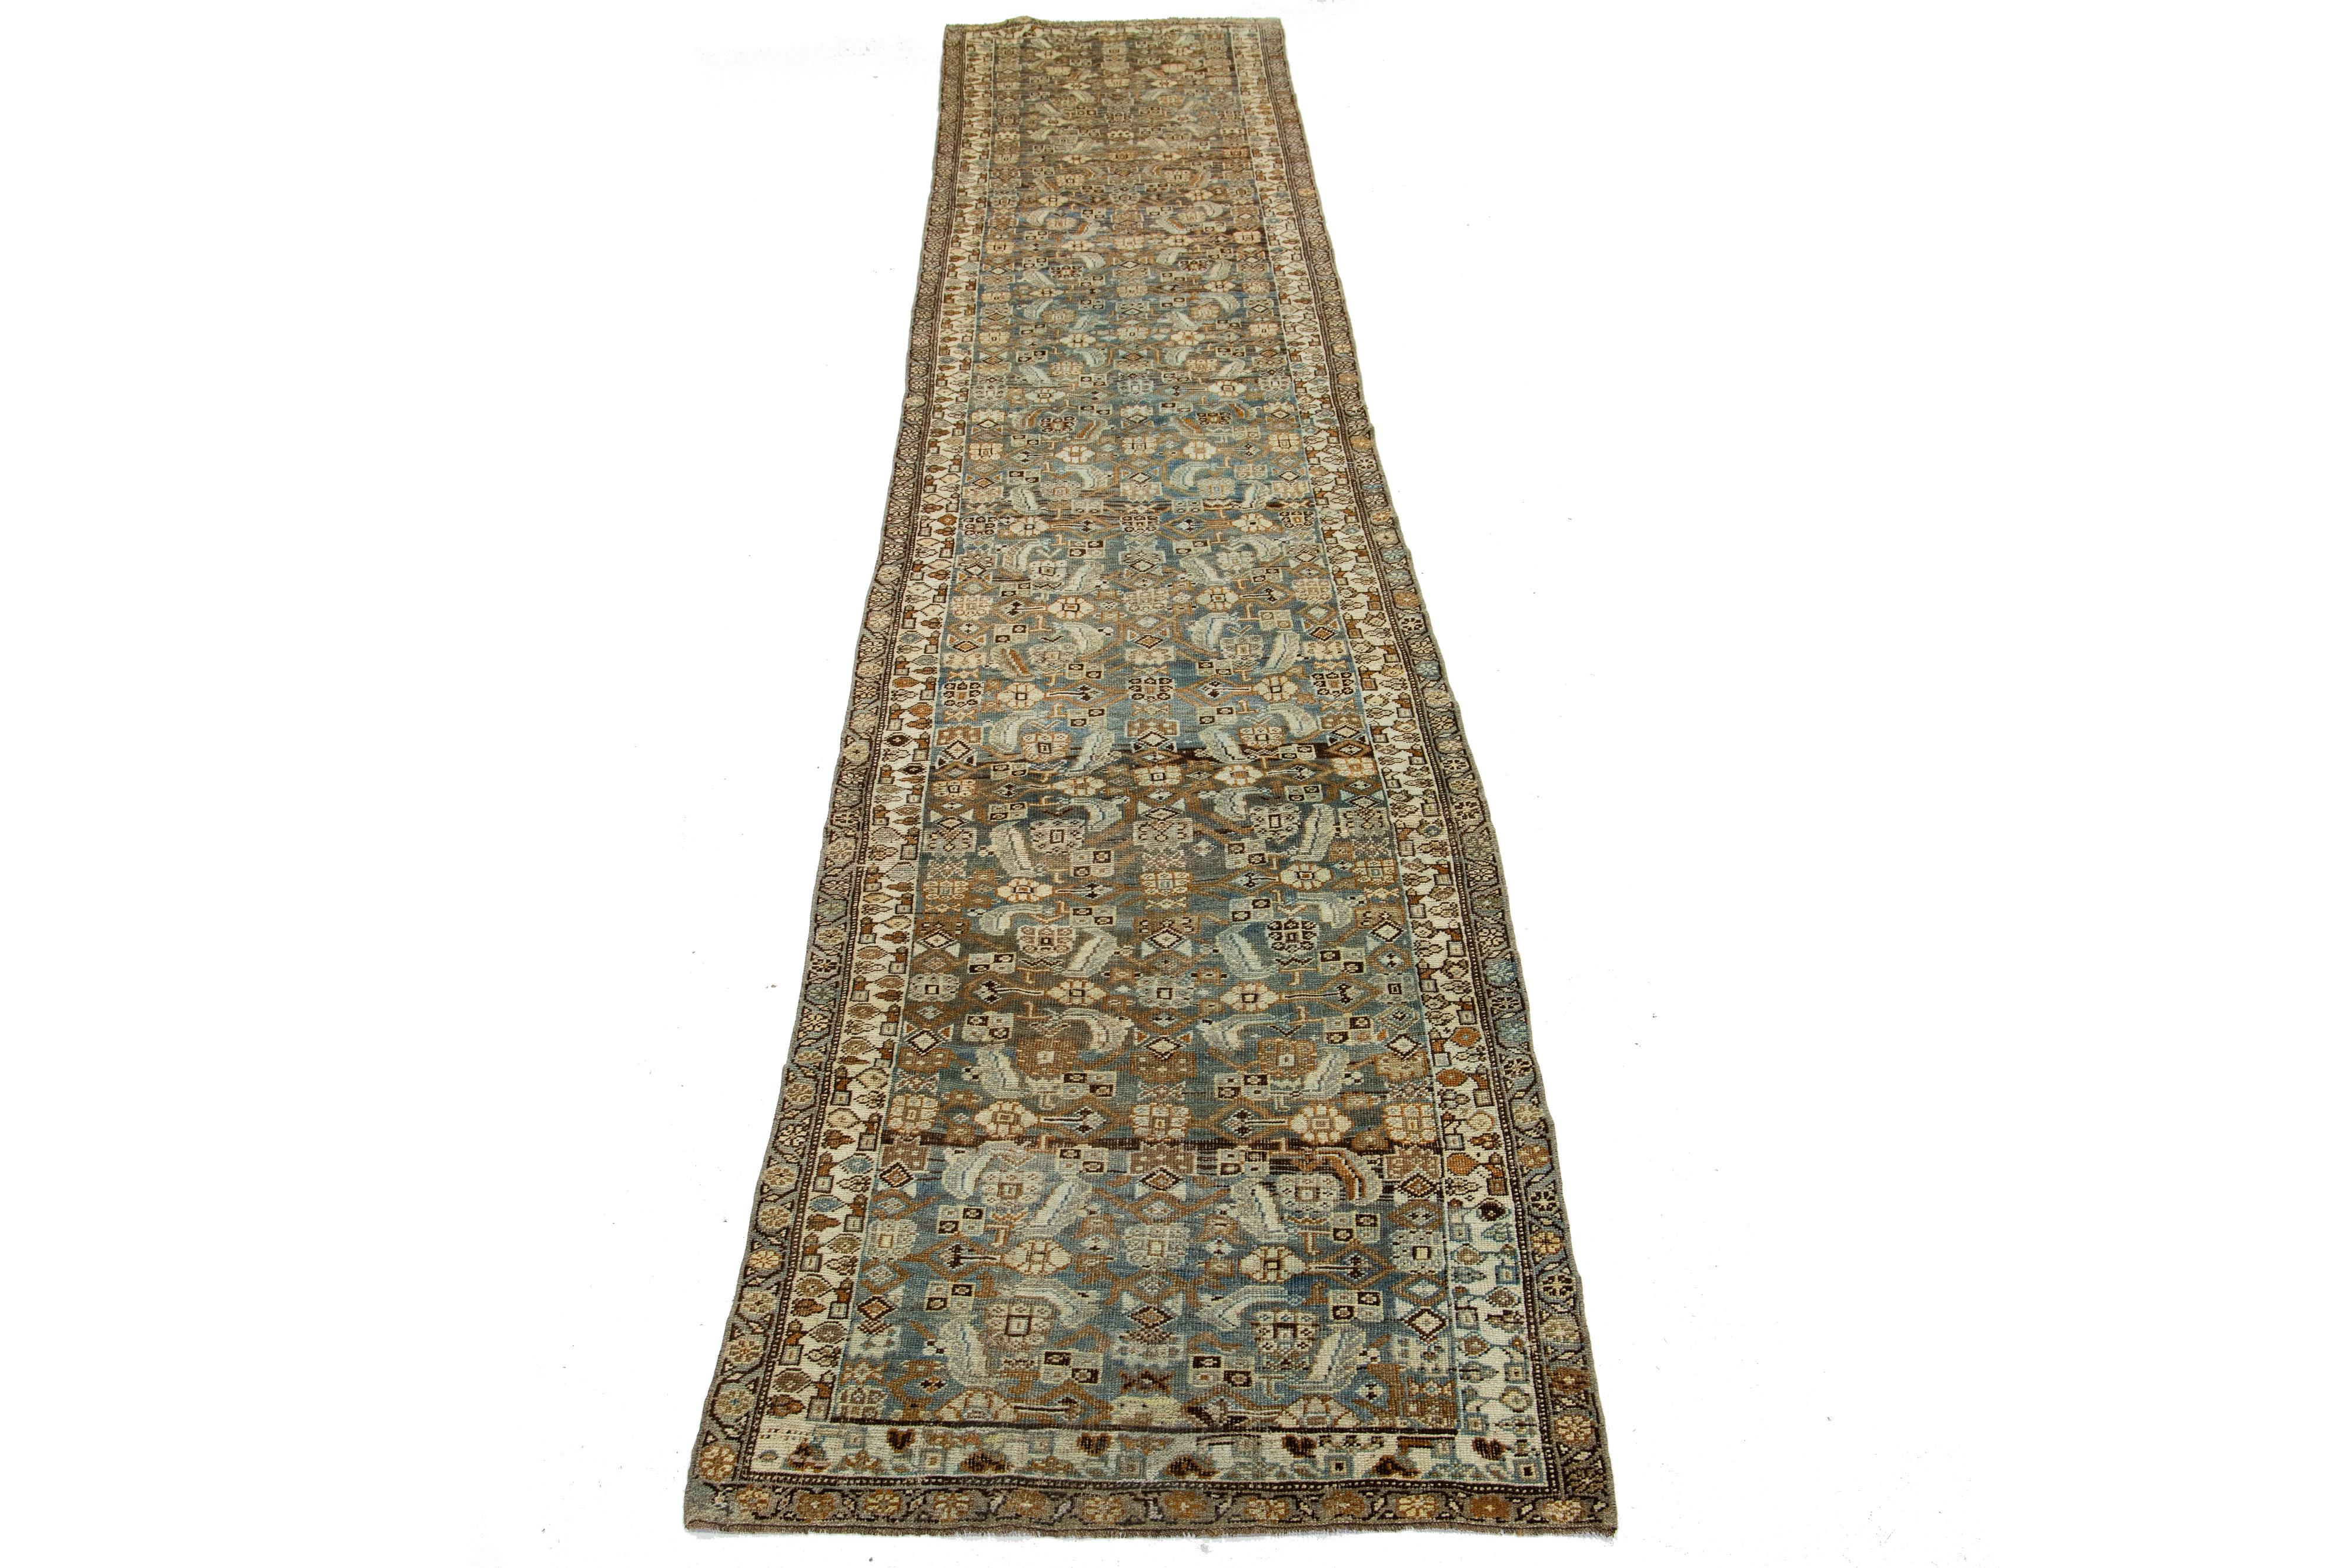 Schöne antike Bidjar handgeknüpfte Wolle Läufer mit einem blauen Farbfeld. Dieser Bidjar-Teppich hat einen gestalteten Rahmen mit beigen, orangen und braunen Akzenten in einem wunderschönen Allover-Muster.

Dieser Teppich misst 3'4